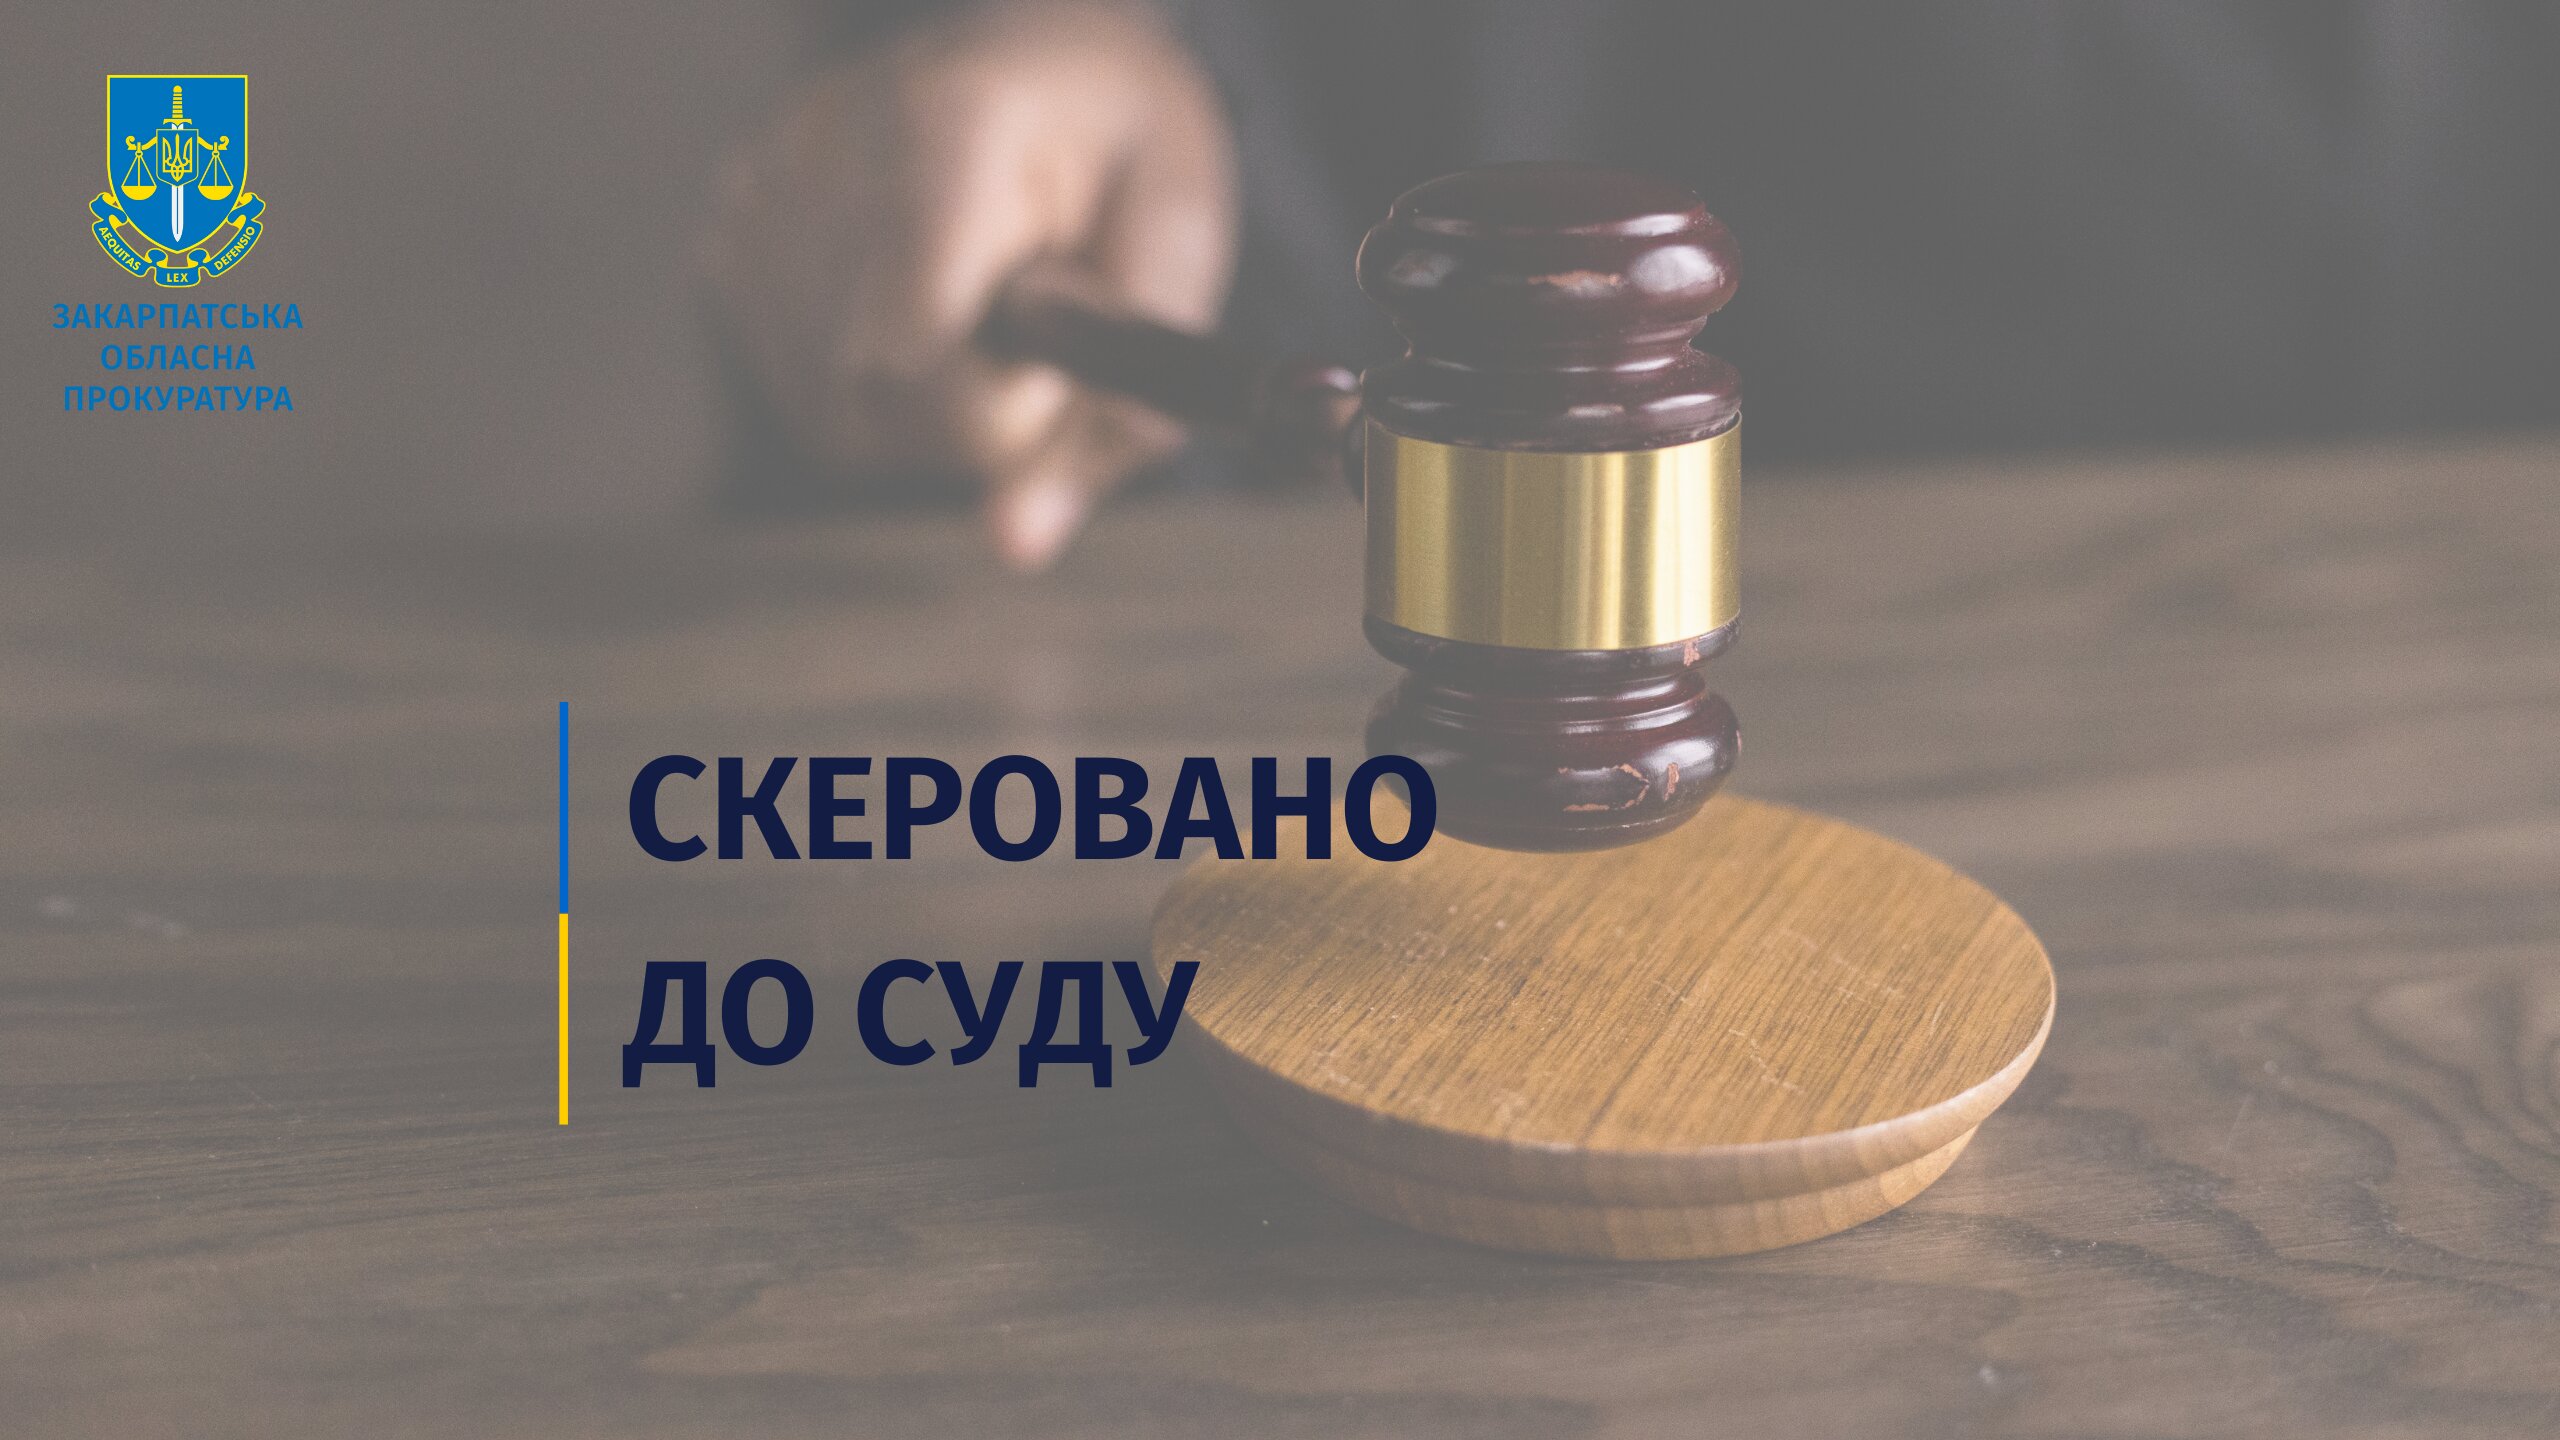 Акт обвинувачення проти подружжя з Виноградова скеровано до суду за фактом незаконного використання знаків для товарів, що завдало матеріальної шкоди у значному розмірі. 